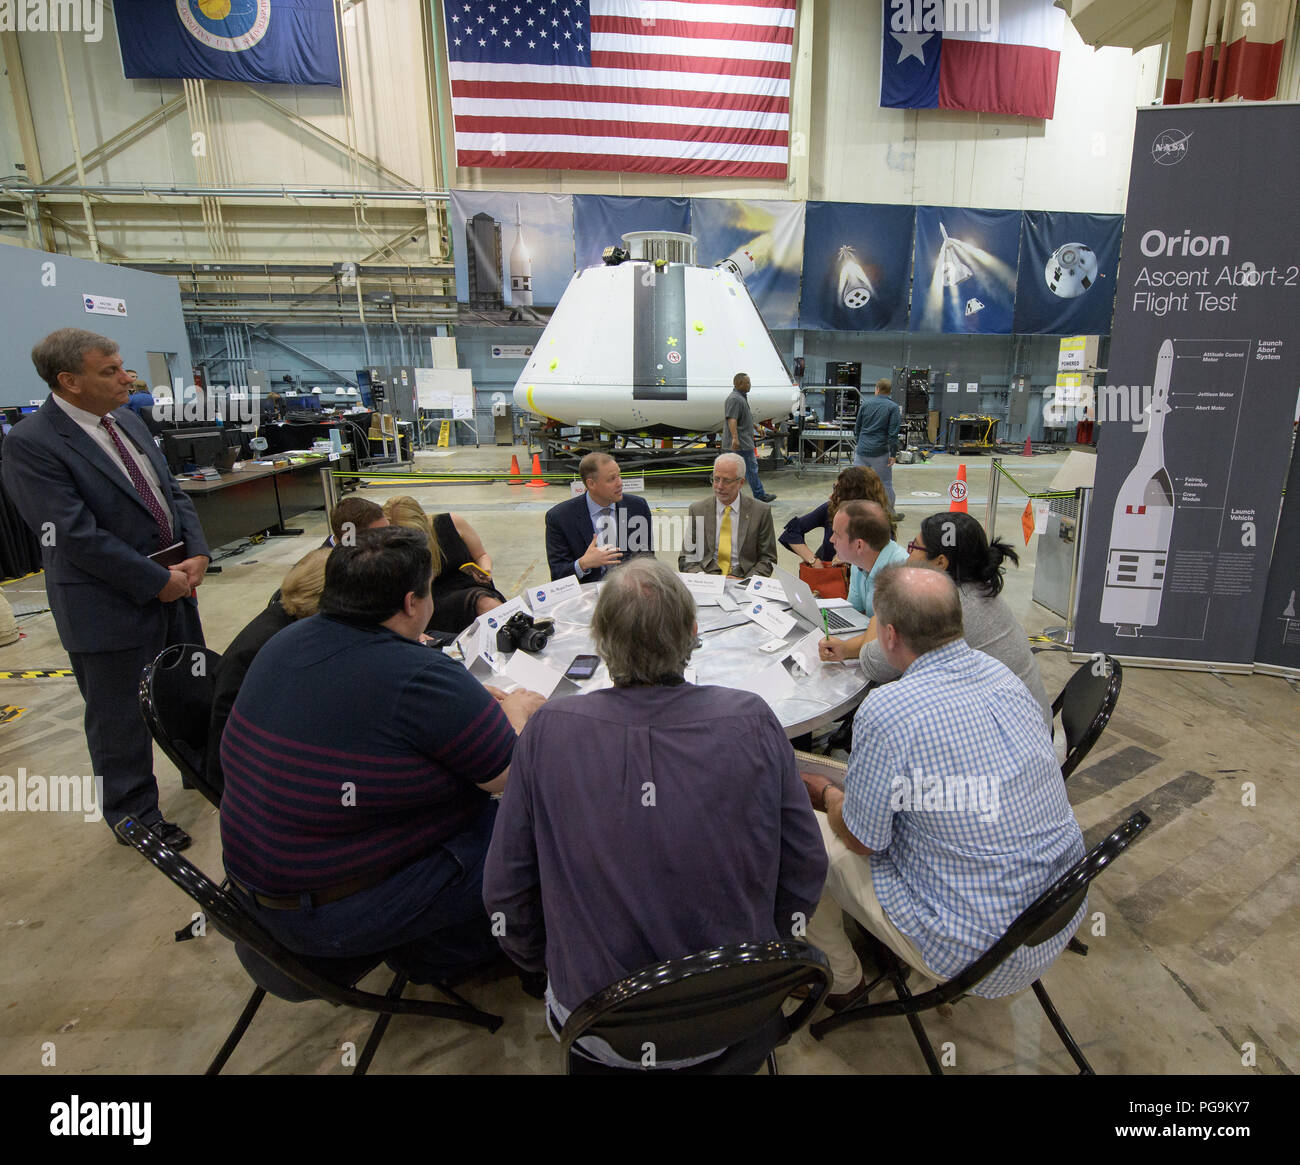 Bridenstine Administrateur de la NASA, Jim, assis à la gauche, et la NASA Johnson Space Center Réalisateur Mark Geyer, assis droit participer à une table ronde dans les médias avant de l'équipage d'essai capsule Orion pour l'ascension Abort-2 (AA-2), le jeudi, Août 2, 2018 au Centre spatial Johnson de la NASA à Houston, Texas. Banque D'Images